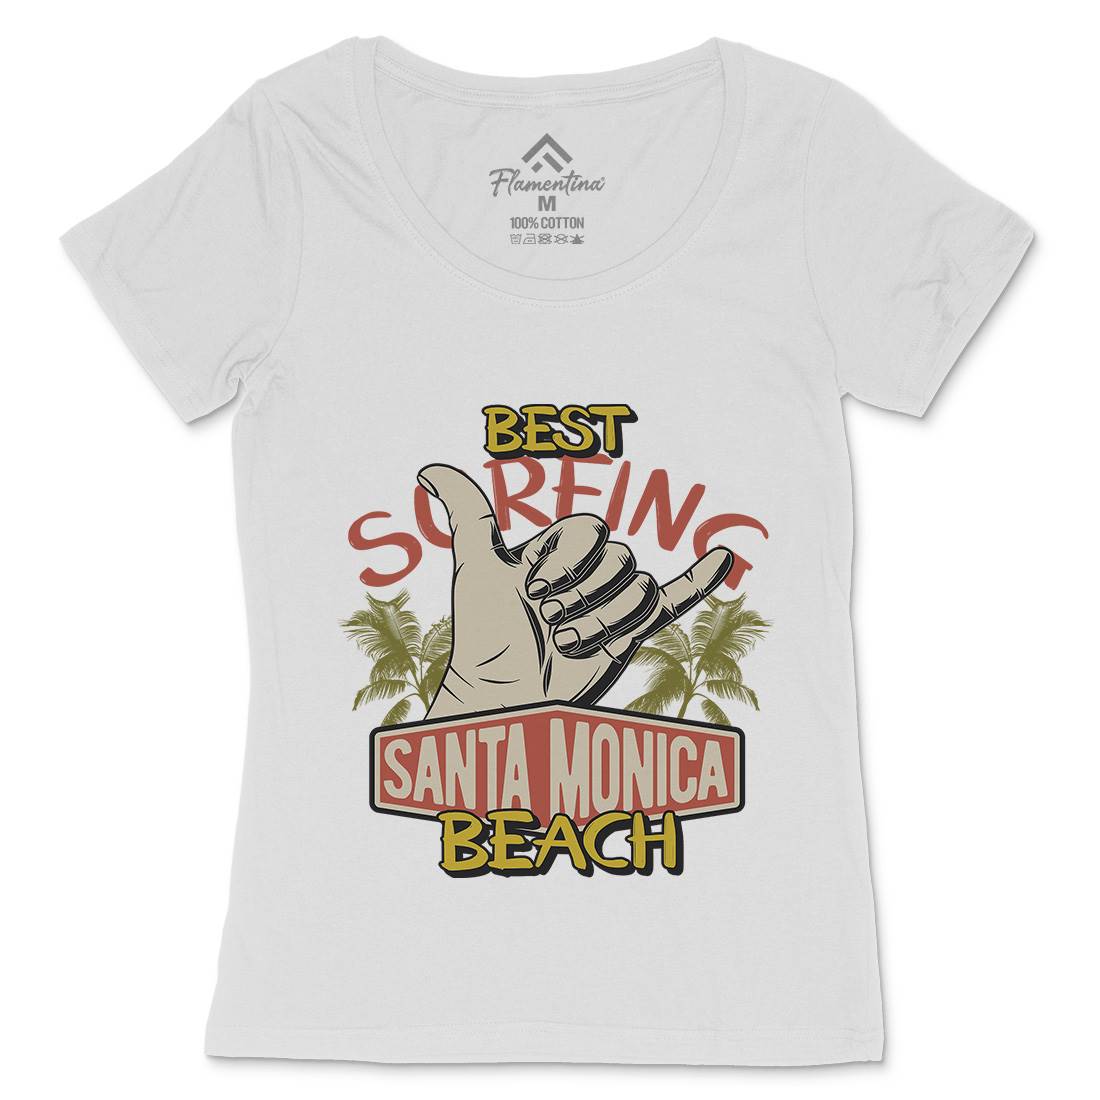 Best Surfing Beach Womens Scoop Neck T-Shirt Surf D909